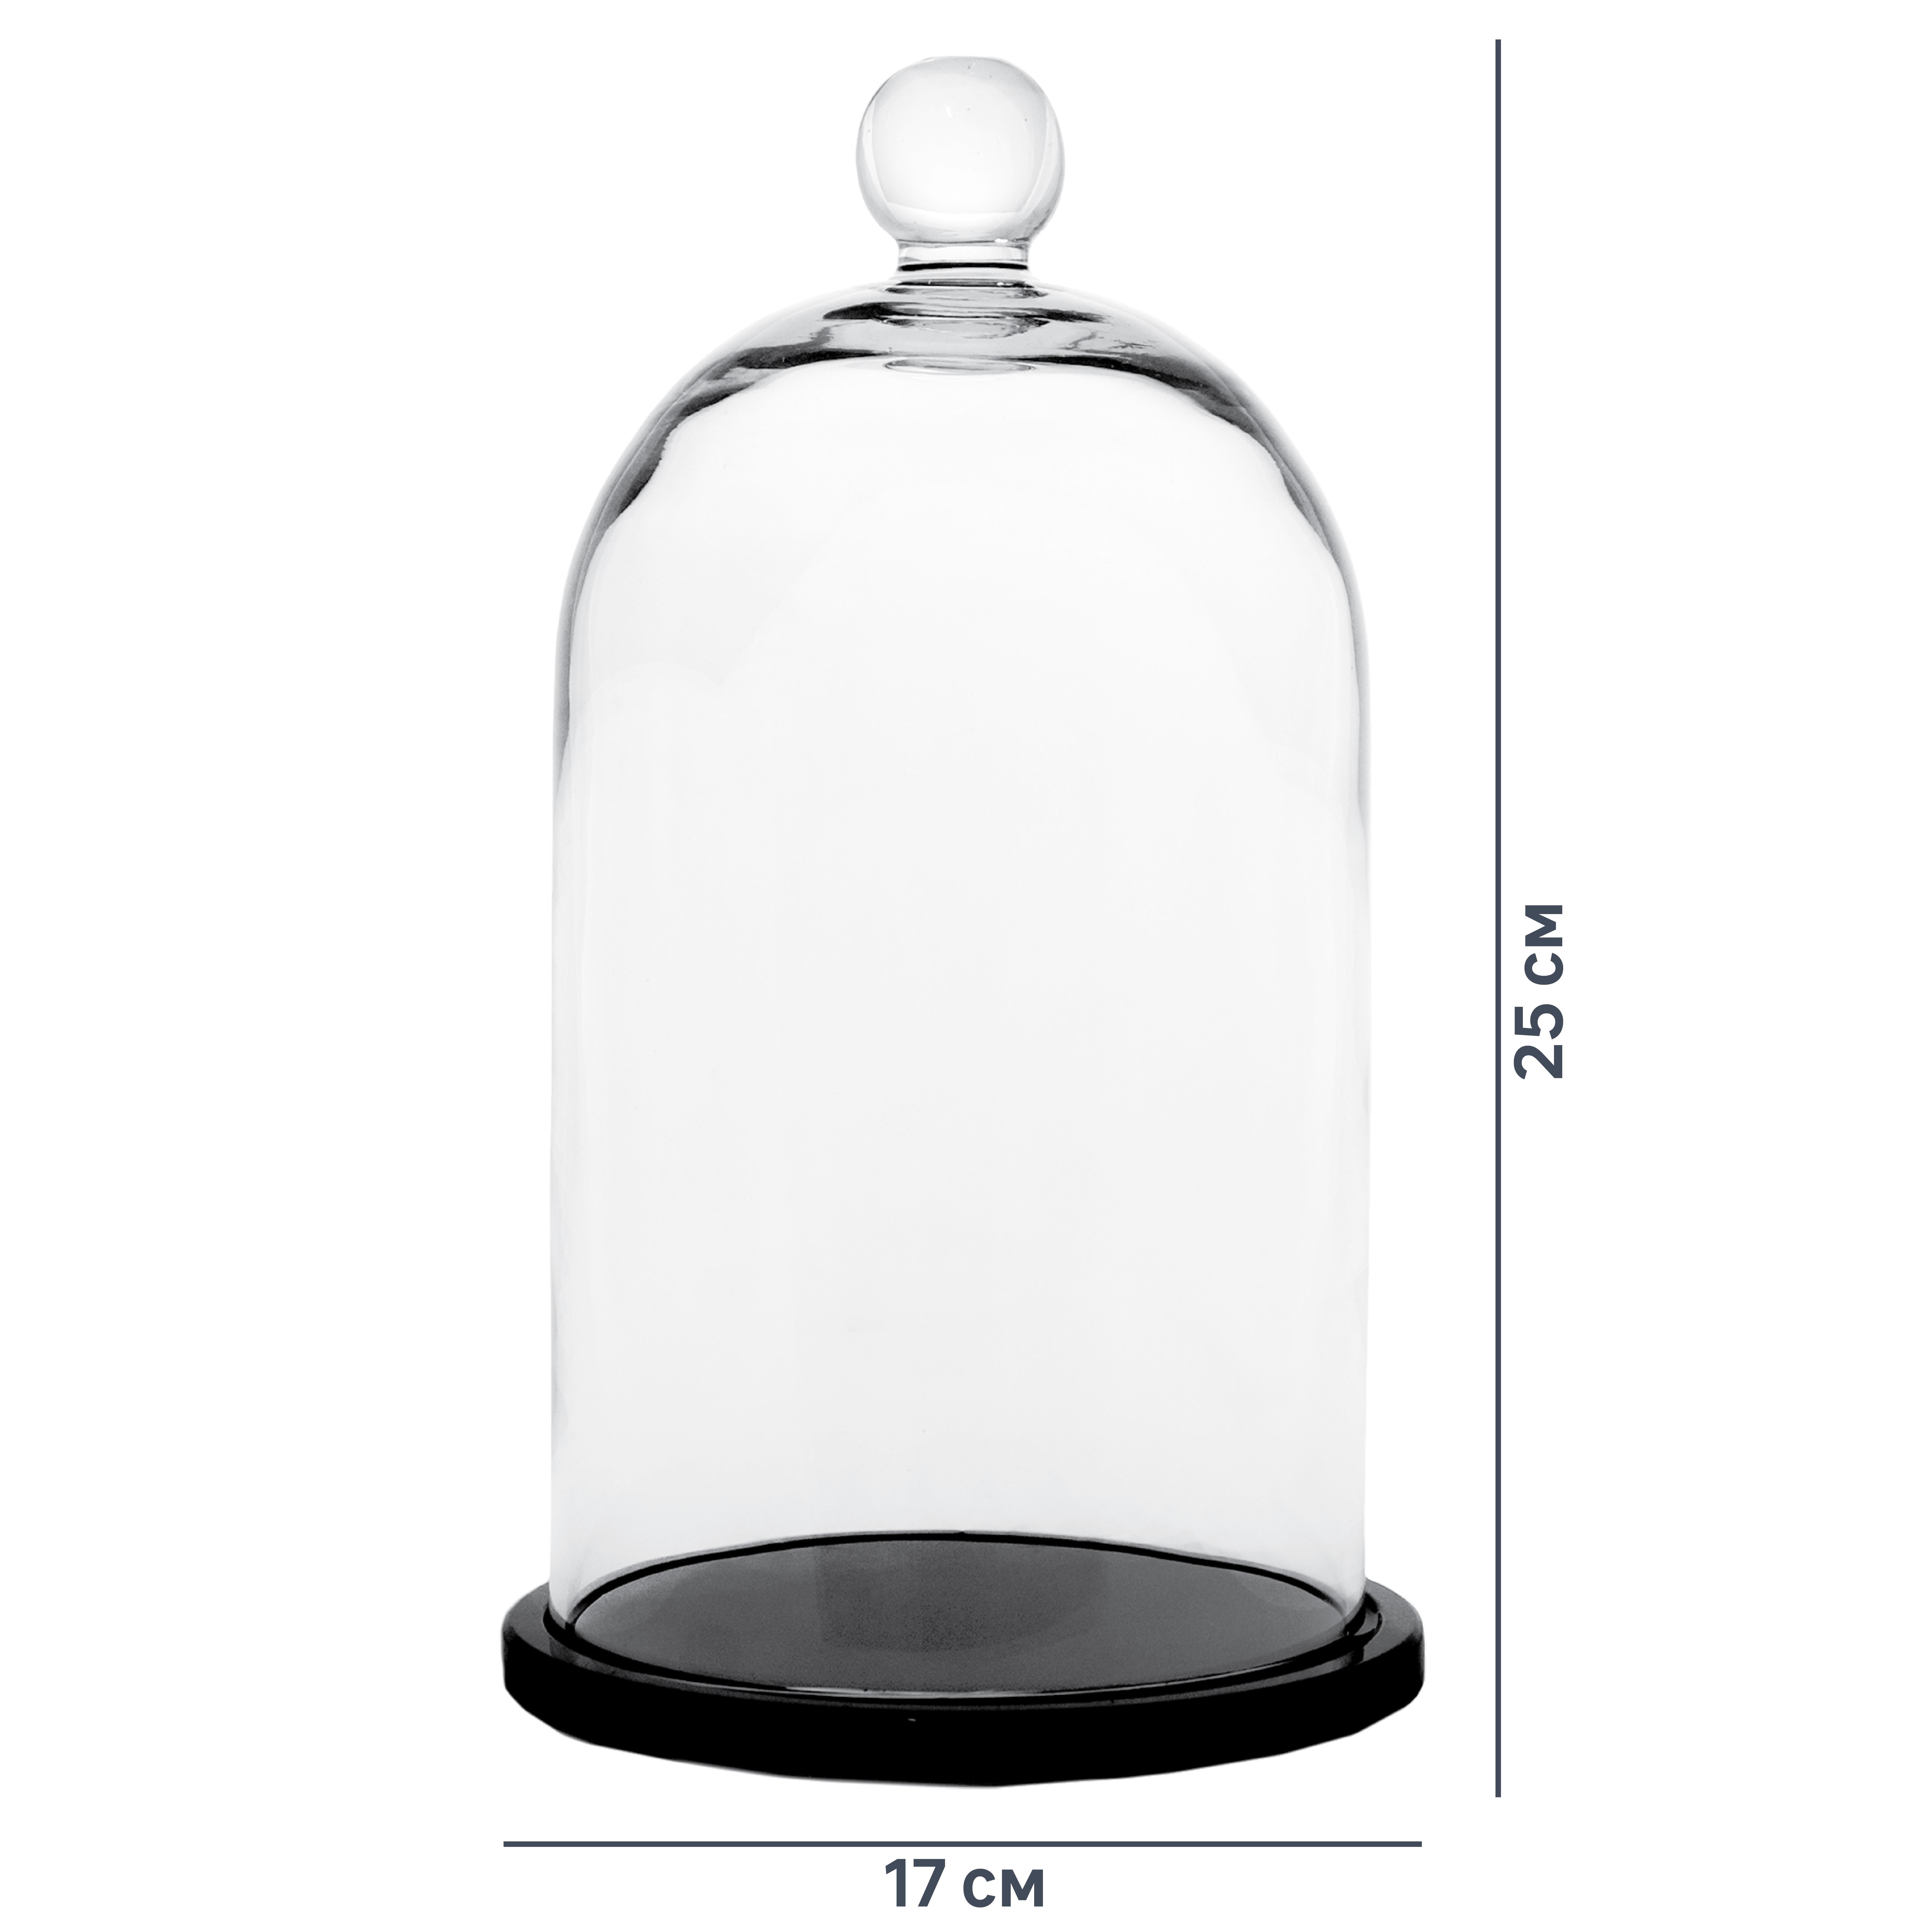 Колпак из стекла. Колпак с подставкой «Родрик» стекло цвет прозрачный 25 см. Колпак с подставкой Родрик стекло. Клош 25 см. Стеклянная колба (колпак, клош, купол, ваза, цилиндр) 30*20 см..